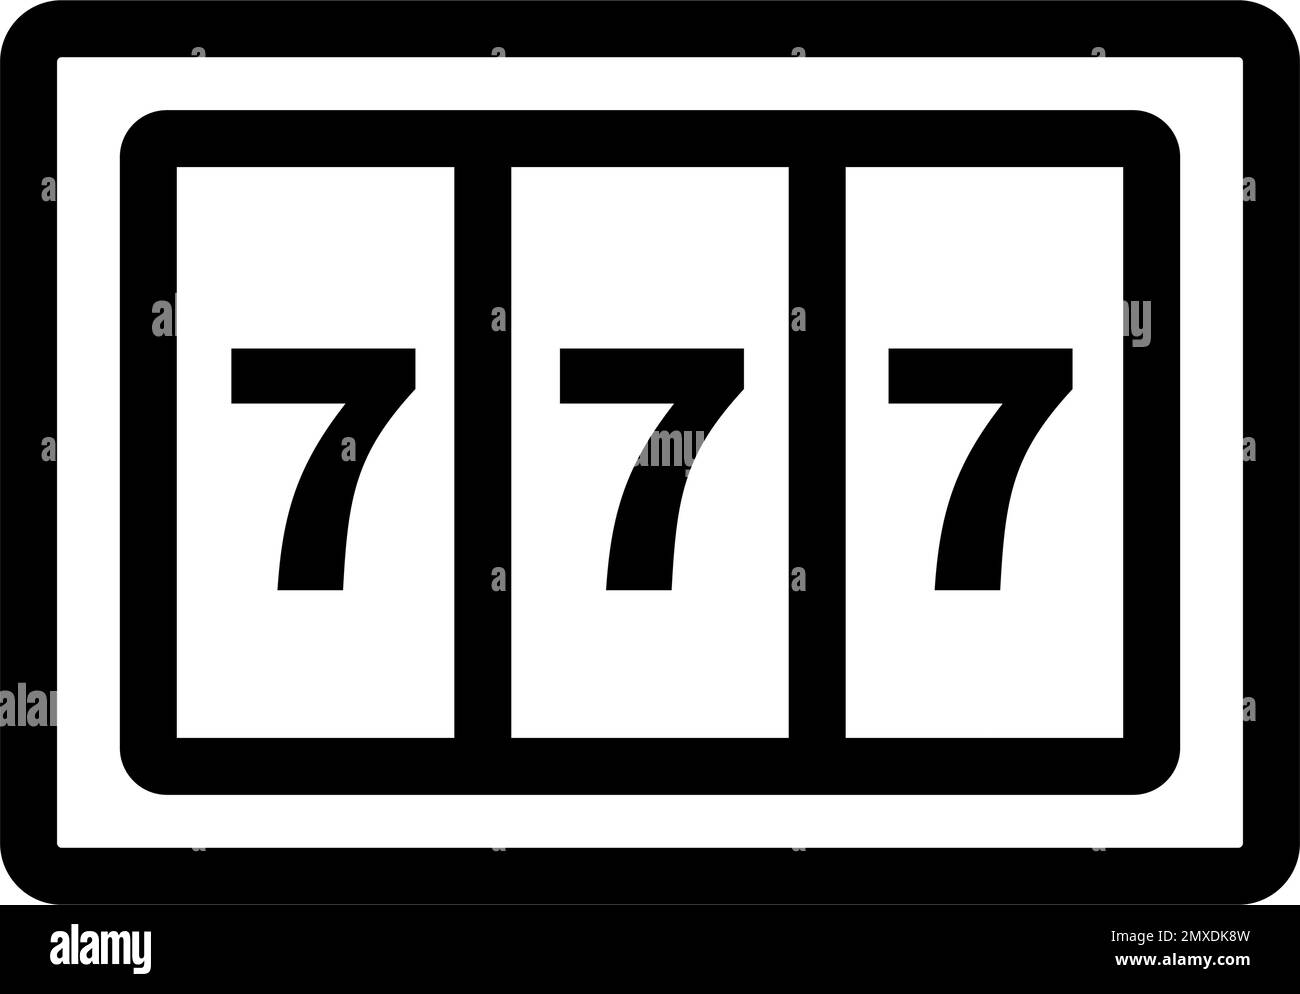 Lucky Seven 777 slot machine icon. Editable vector. Stock Vector